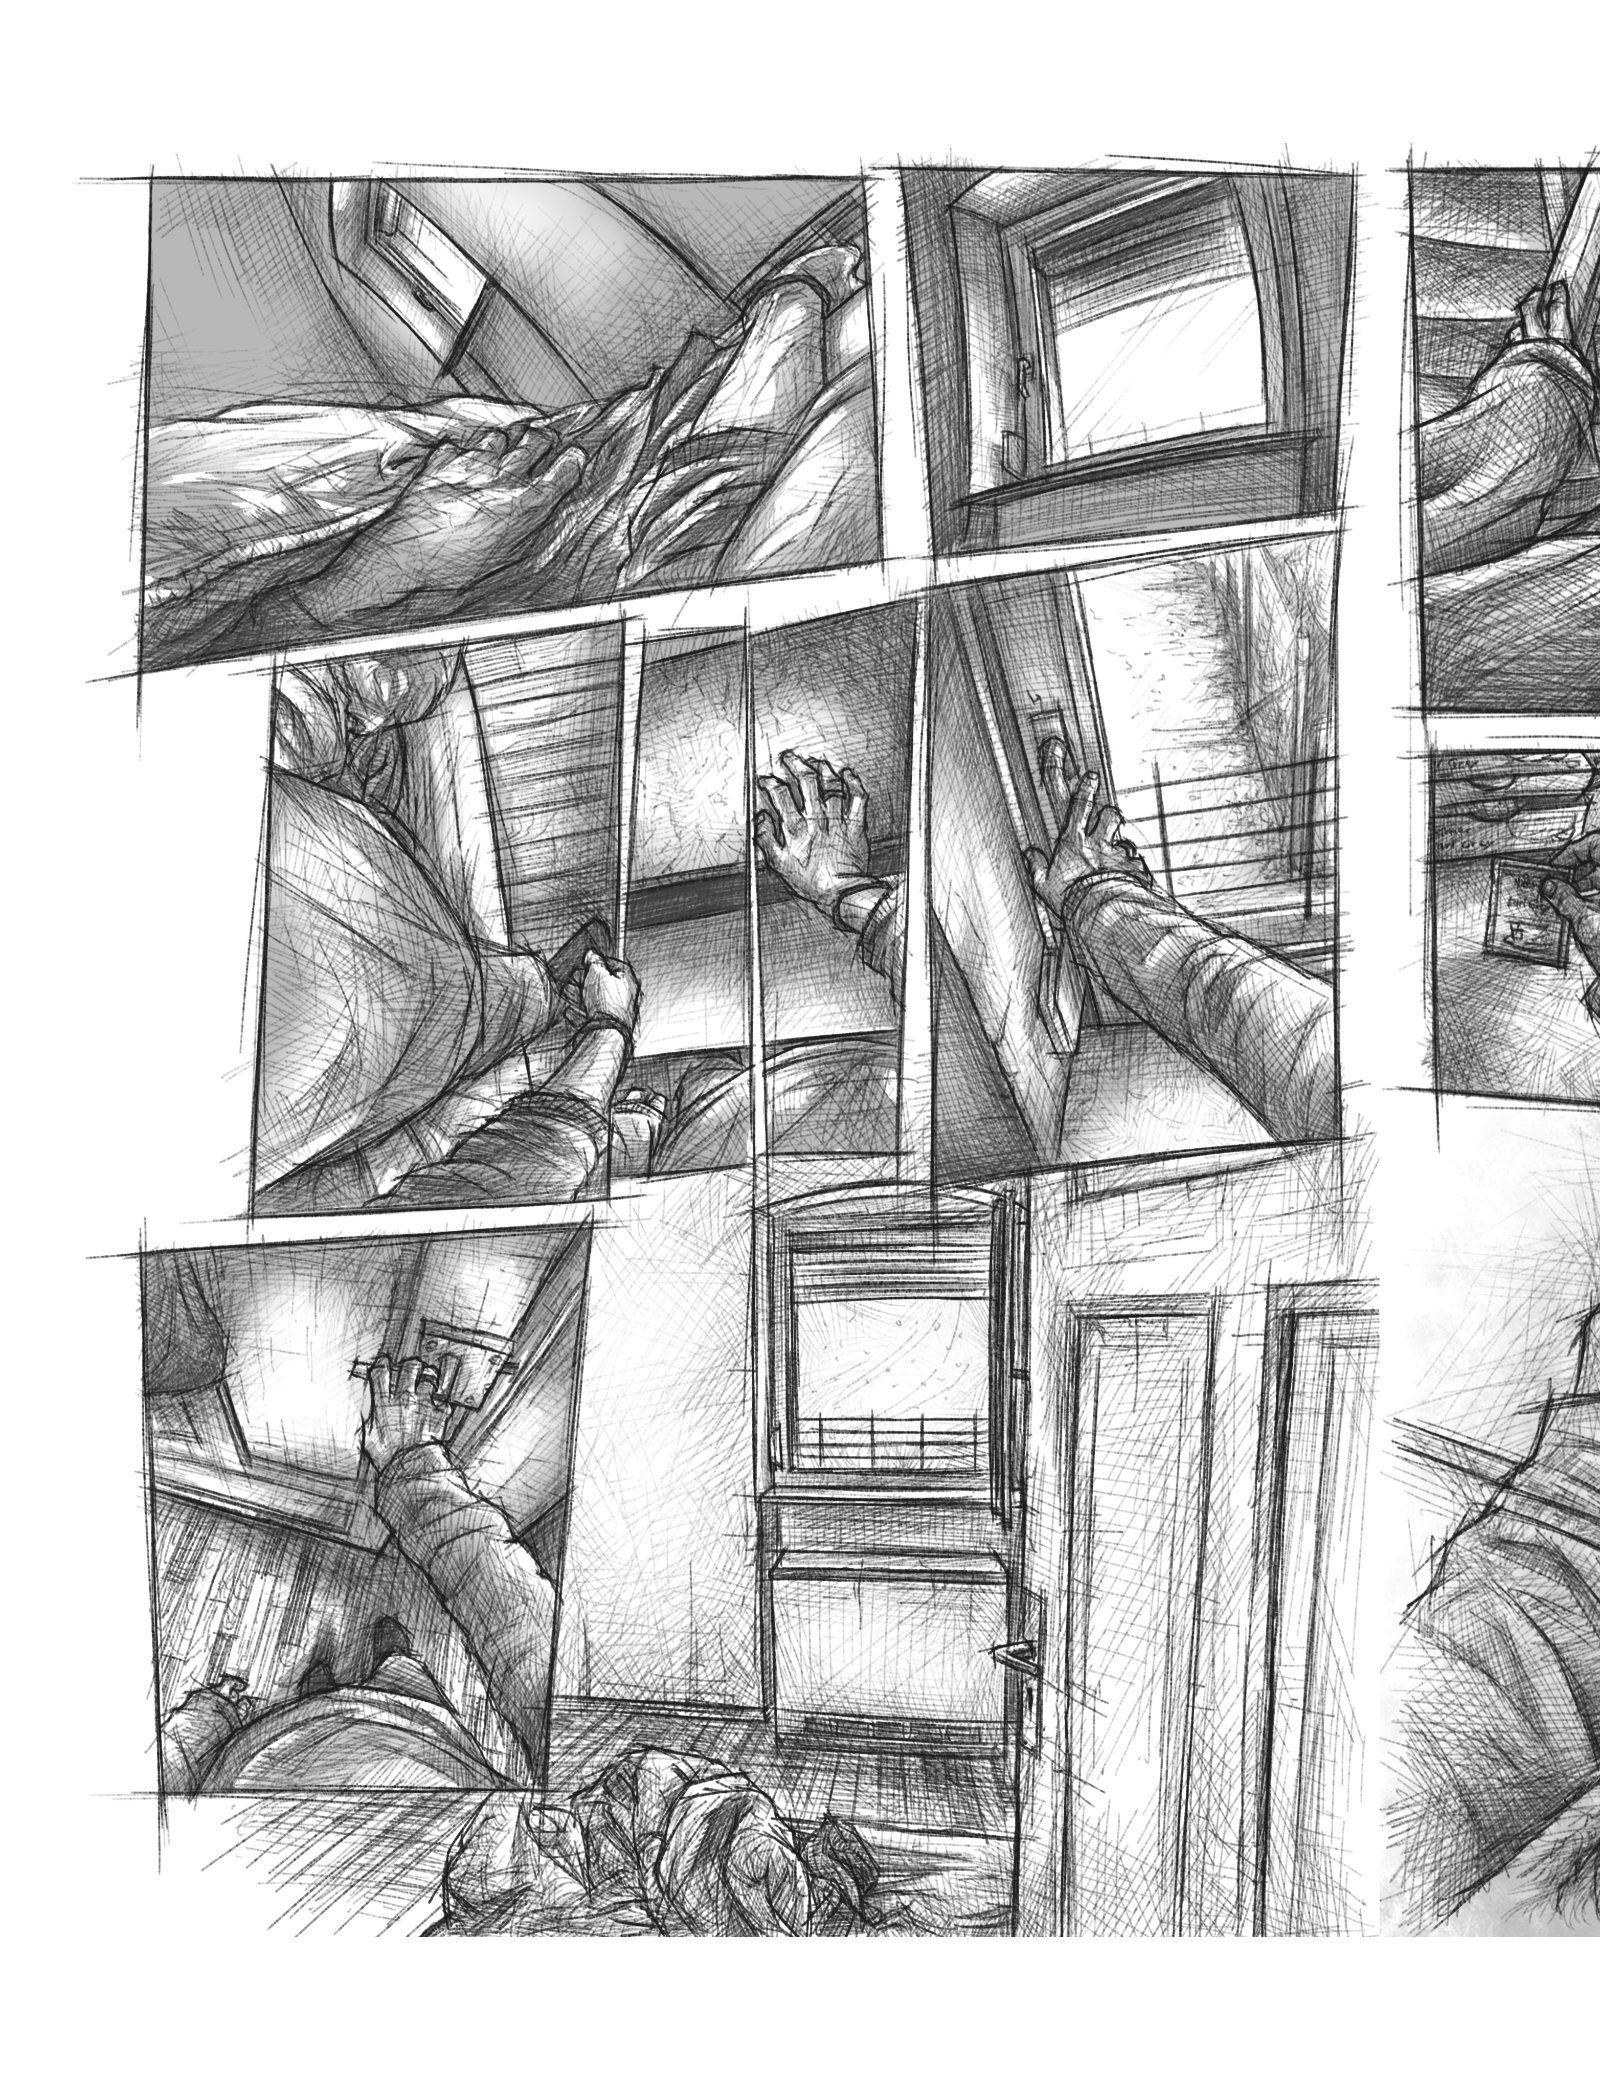 Eine Comic Seite auf der man im Skizzenstil gezeichnete Panels sieht, die aus der Egoperspektive zeigen, wie eine Person morgens aufsteht und das Fenster öffnet